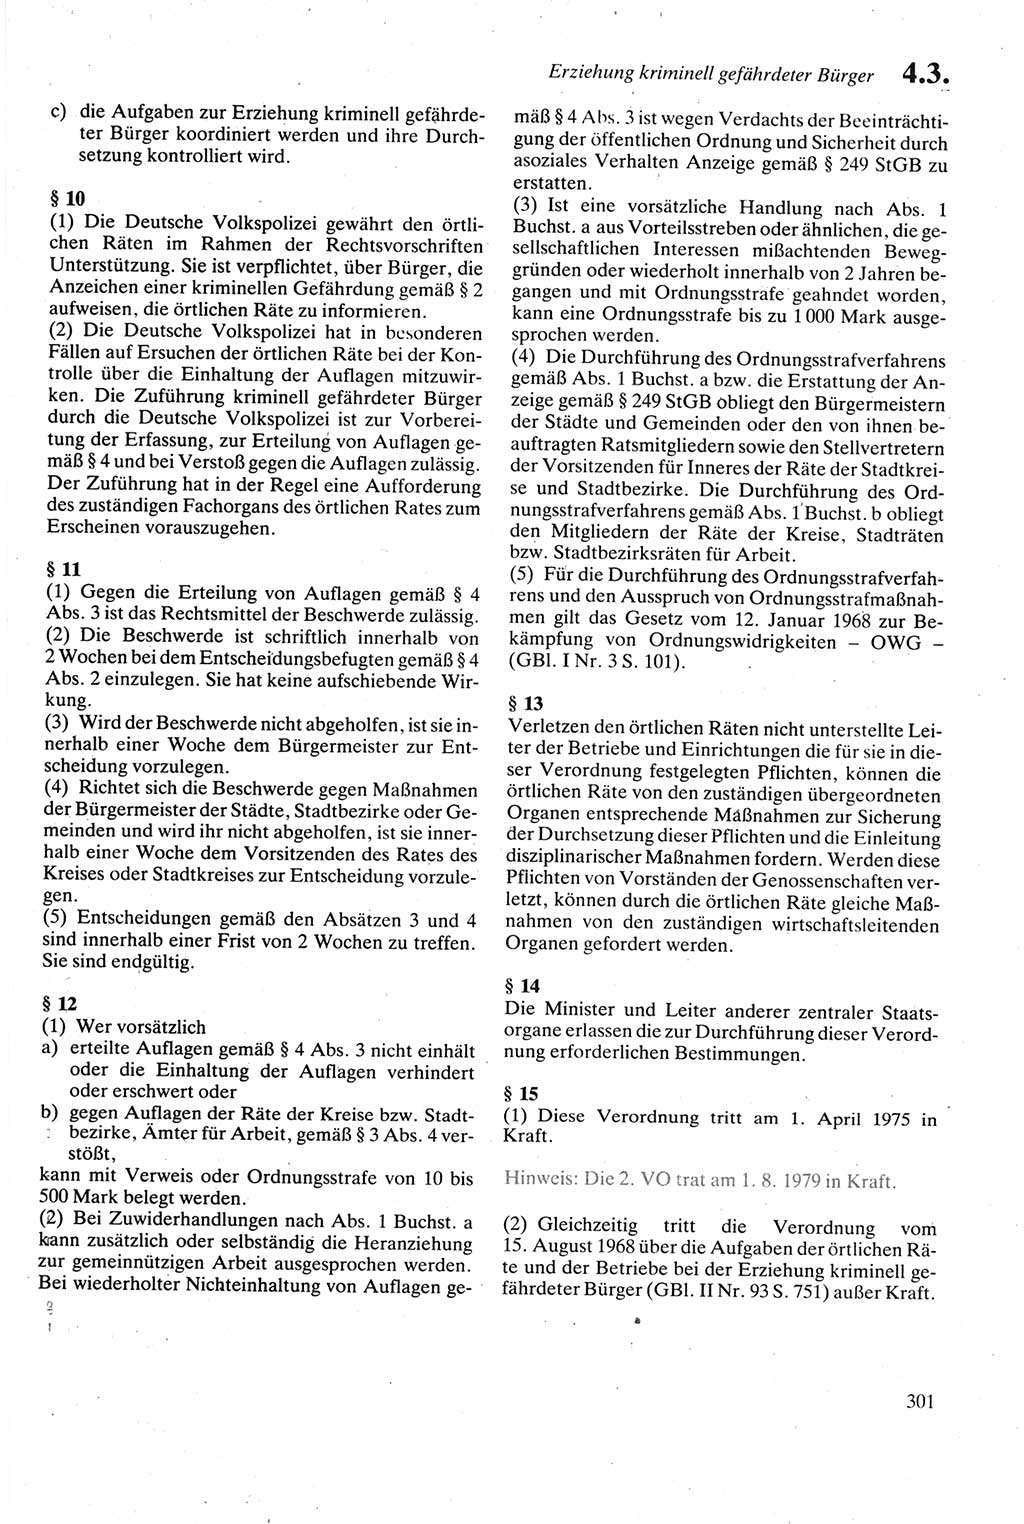 Strafgesetzbuch (StGB) der Deutschen Demokratischen Republik (DDR) sowie angrenzende Gesetze und Bestimmungen 1979, Seite 301 (StGB DDR Ges. Best. 1979, S. 301)